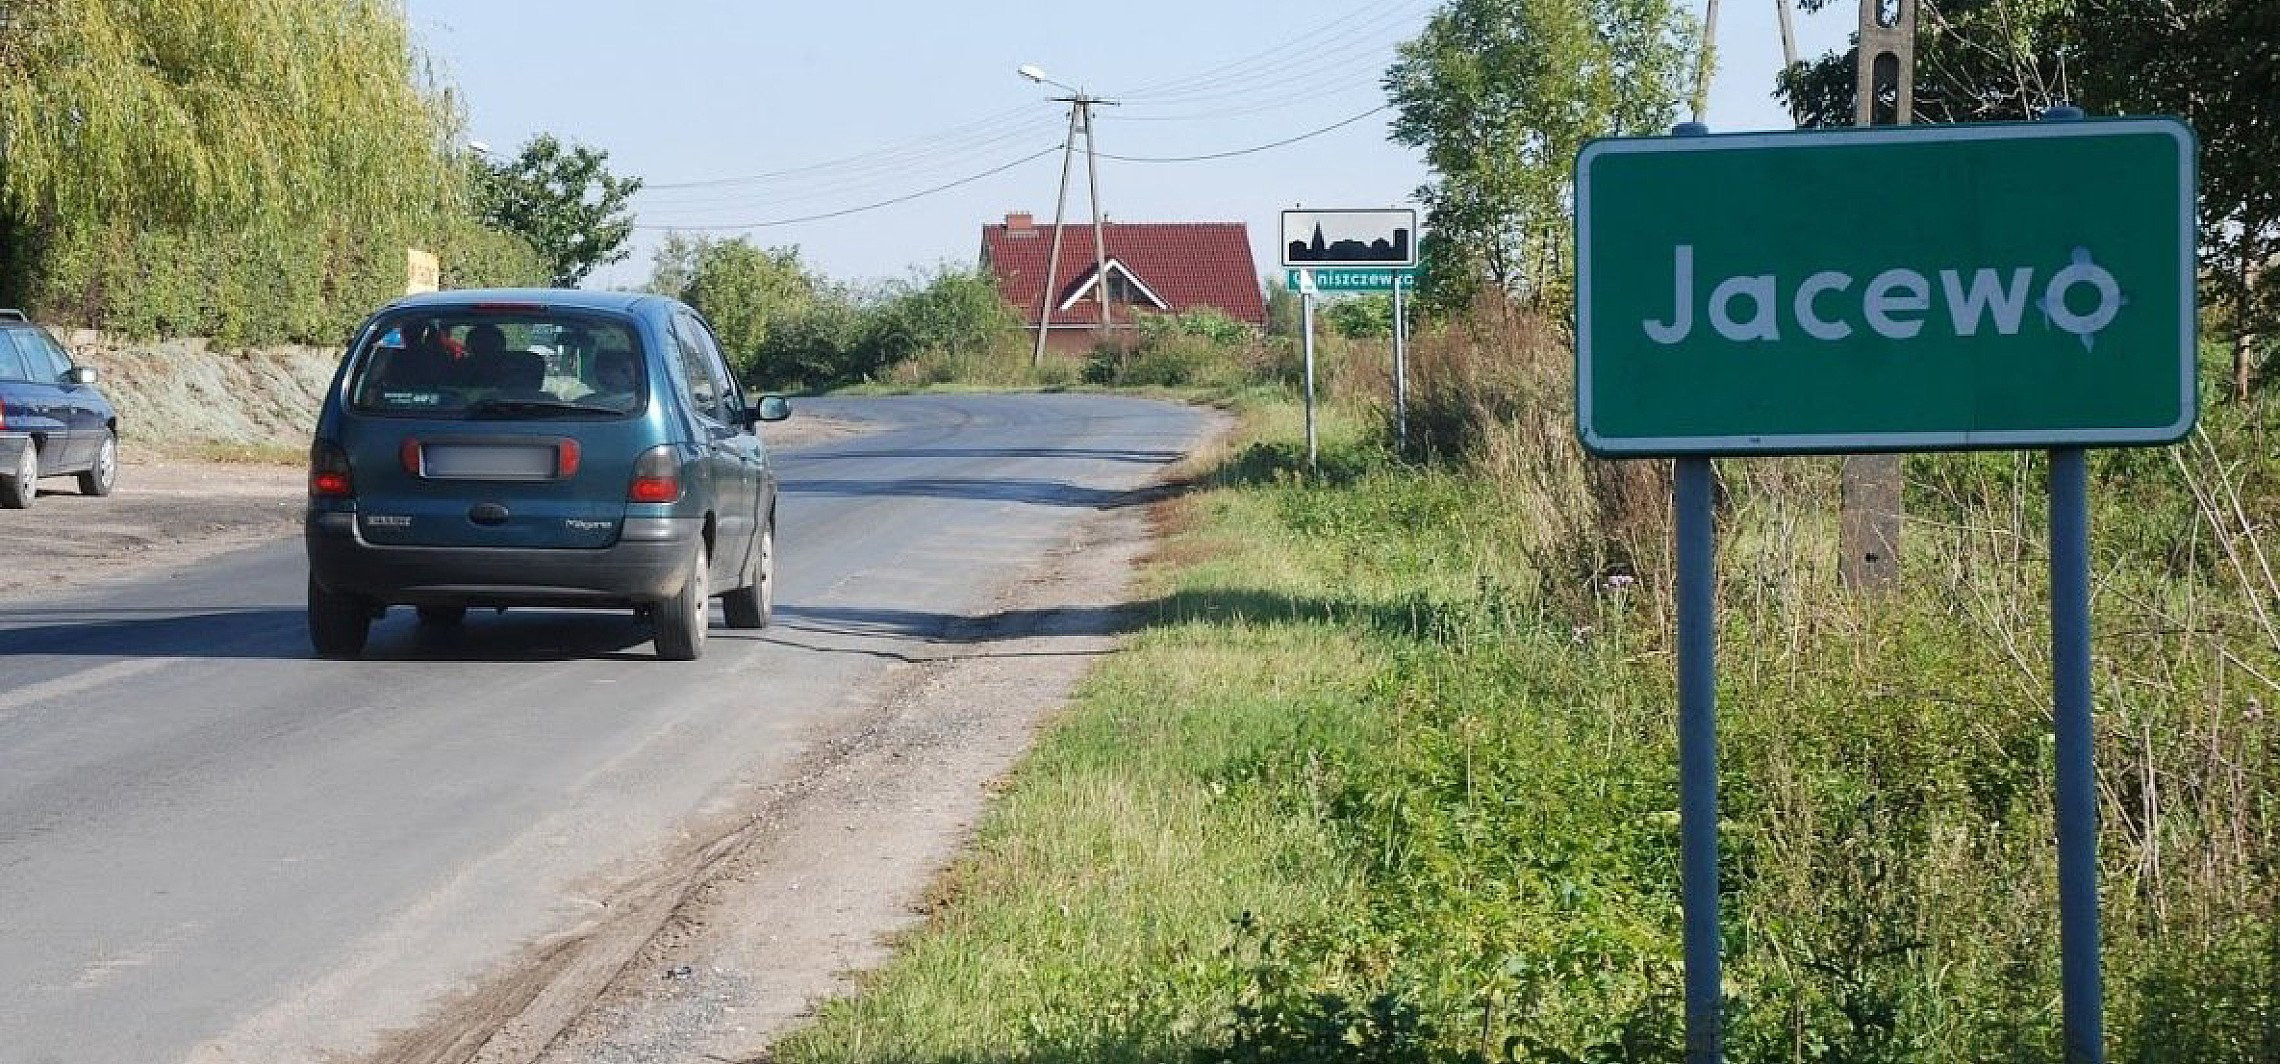 Inowrocław - Kierowcy nagminnie tracą prawa jazdy